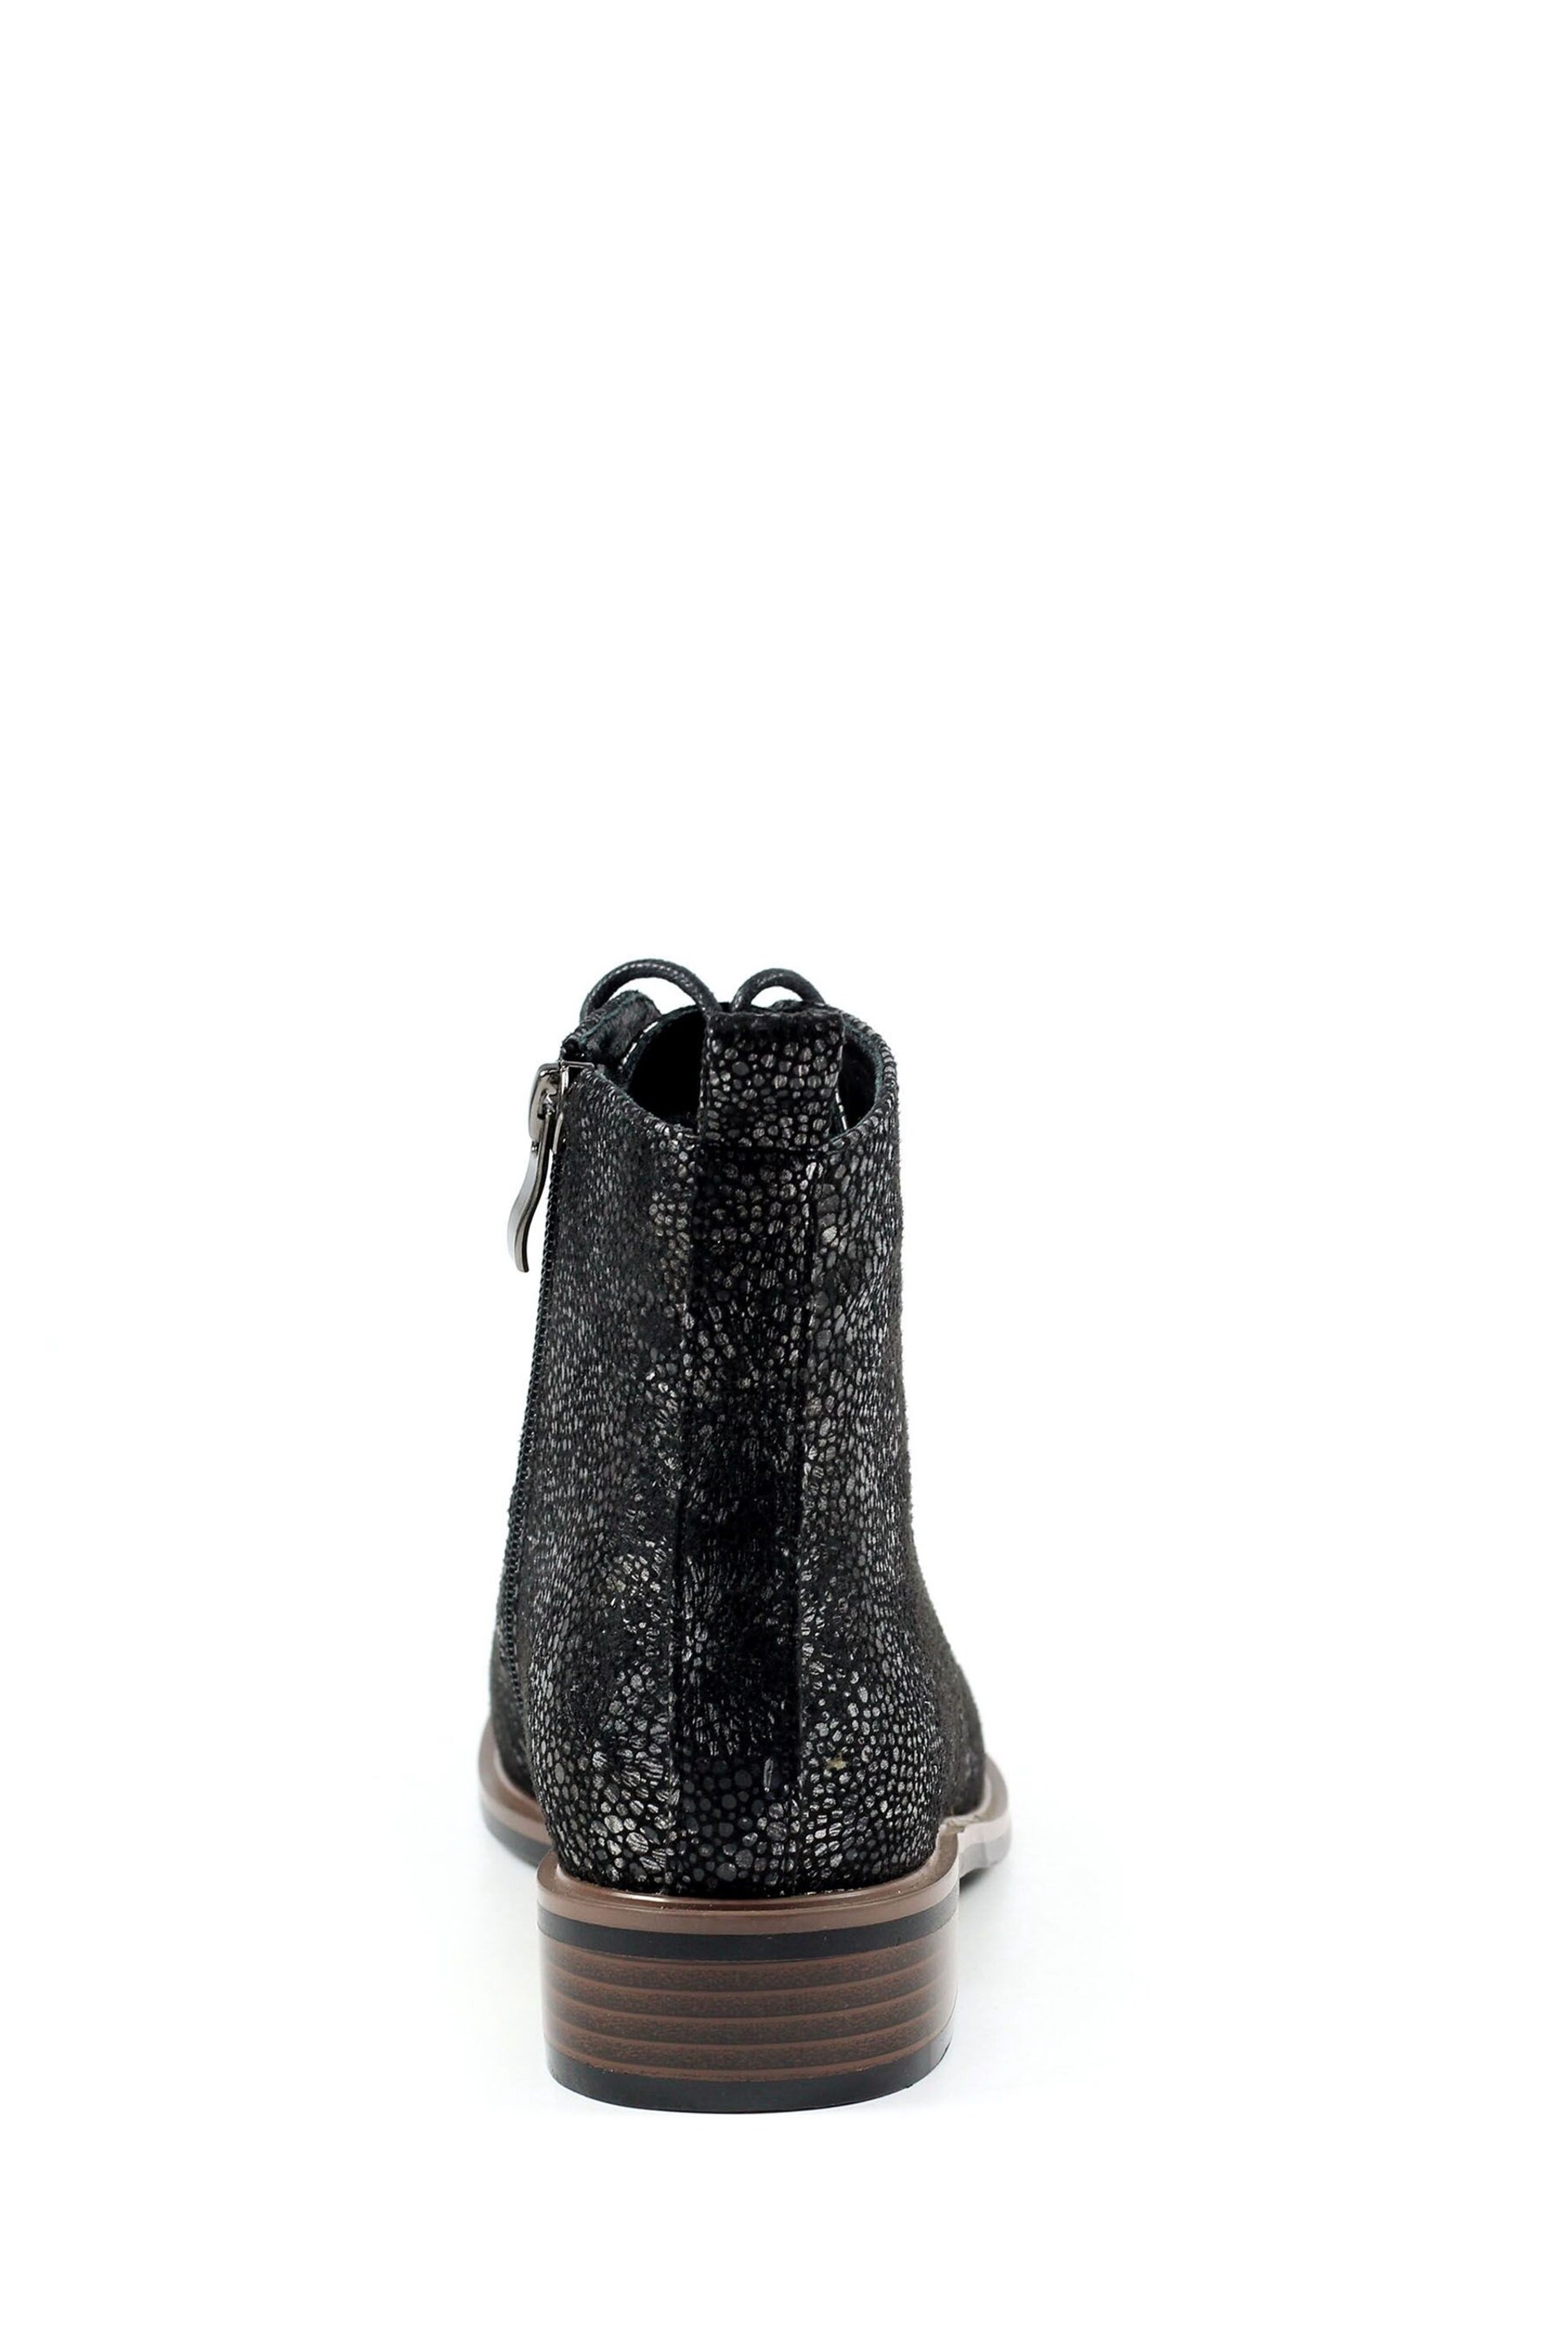 Lunar Caliban Black Ankle Boots - Image 5 of 9